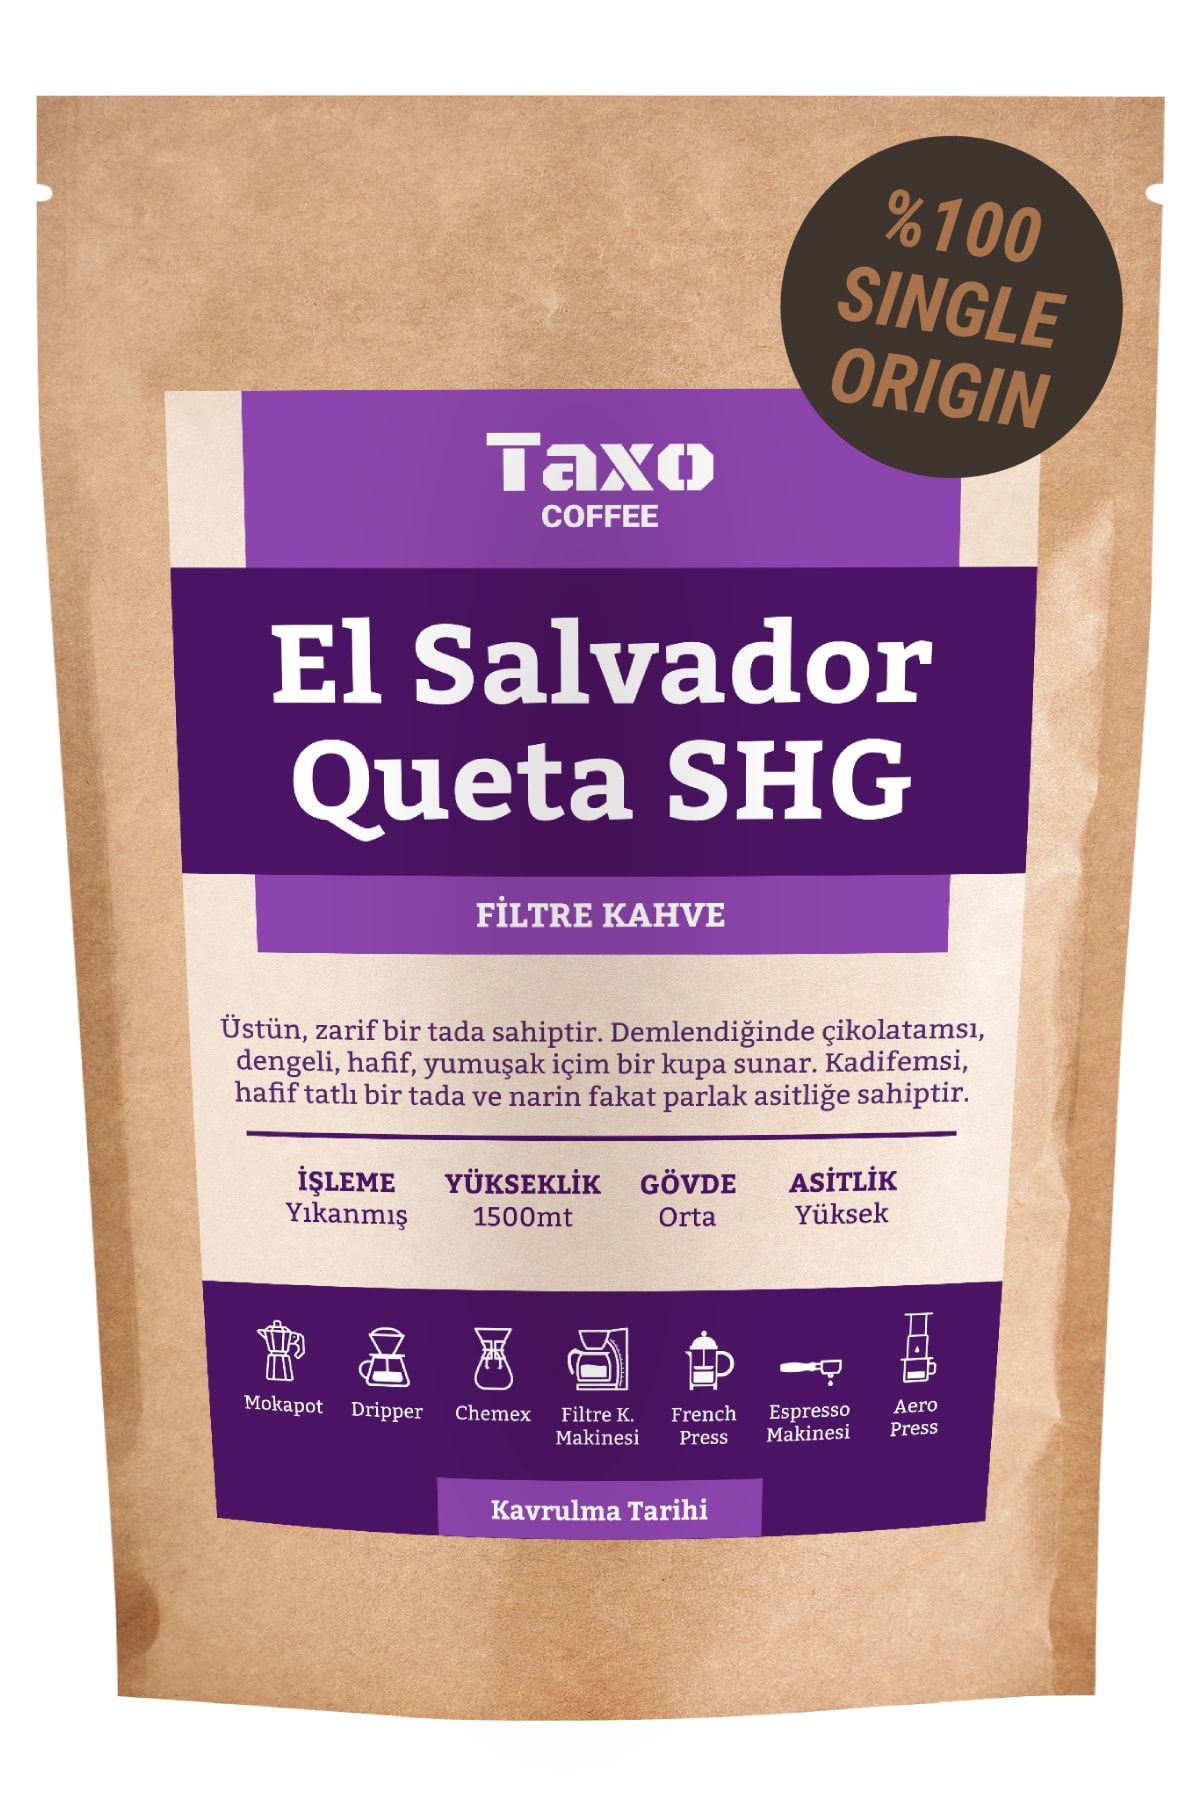 Taxo Coffee El Salvador Queta Shg Filtre Kahve 200gr